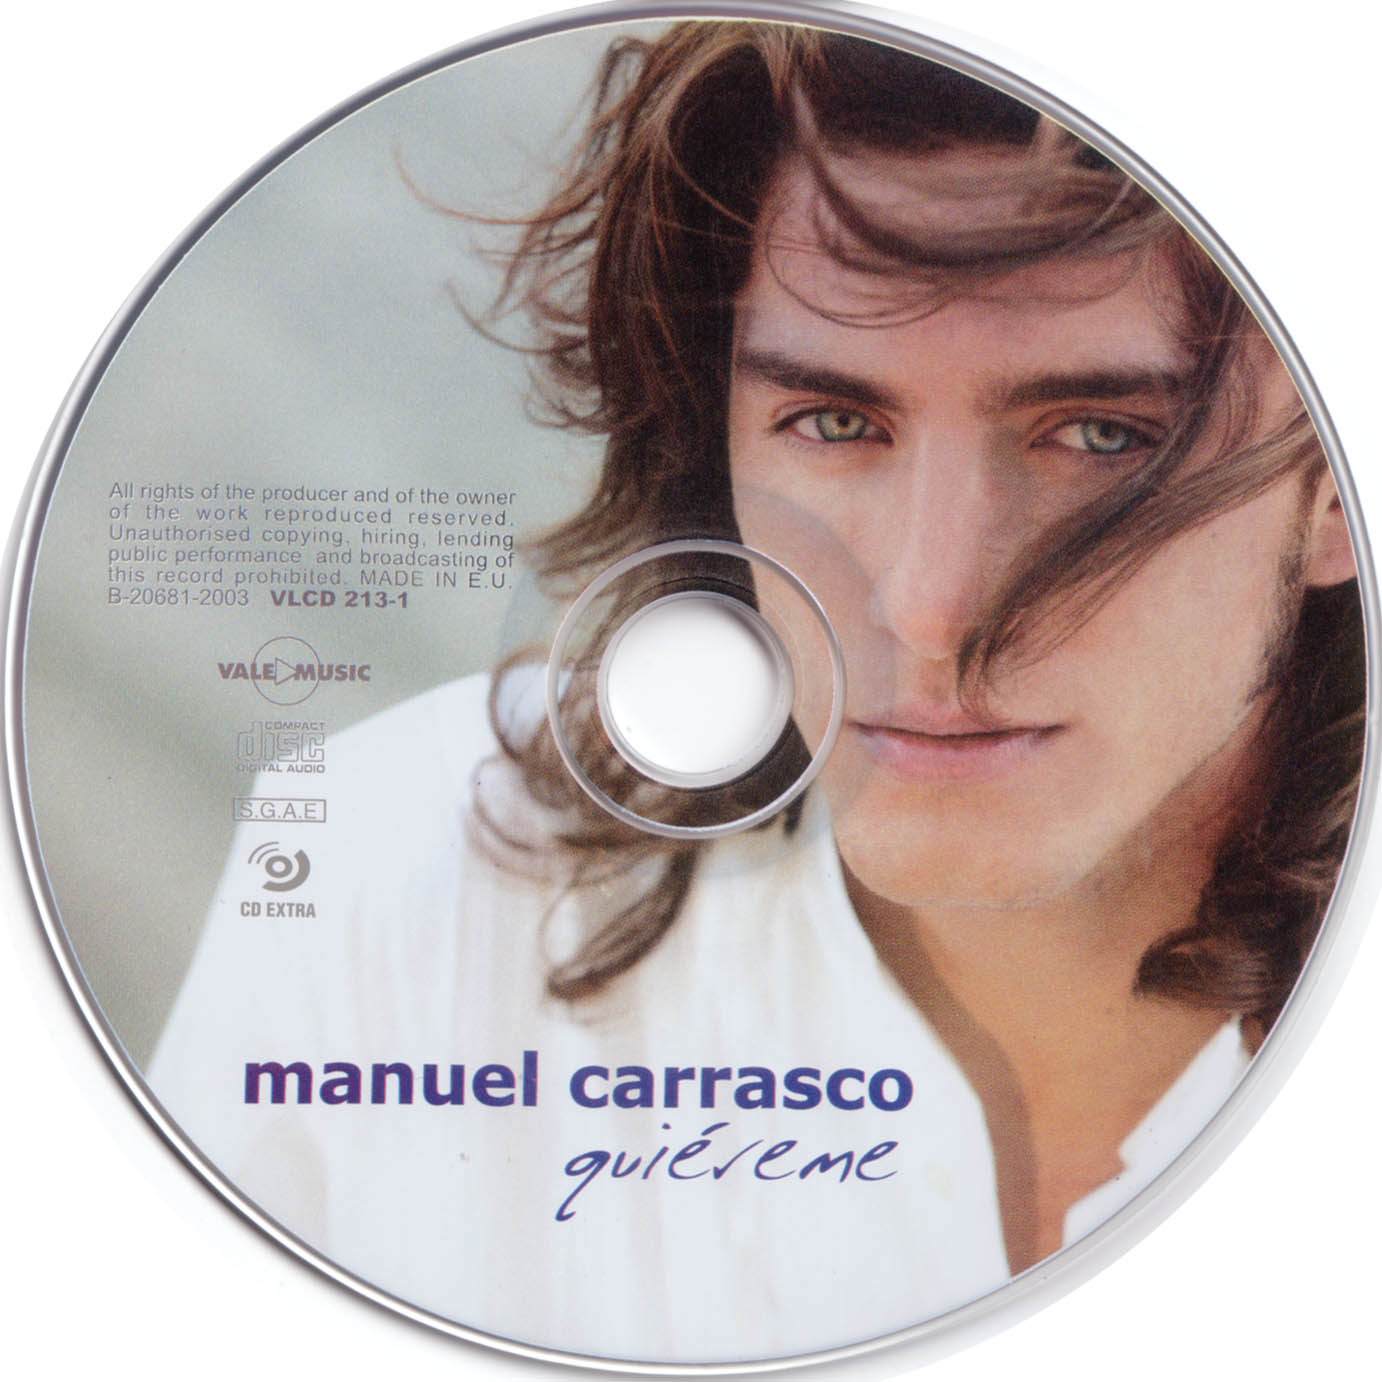 Cartula Cd de Manuel Carrasco - Quiereme